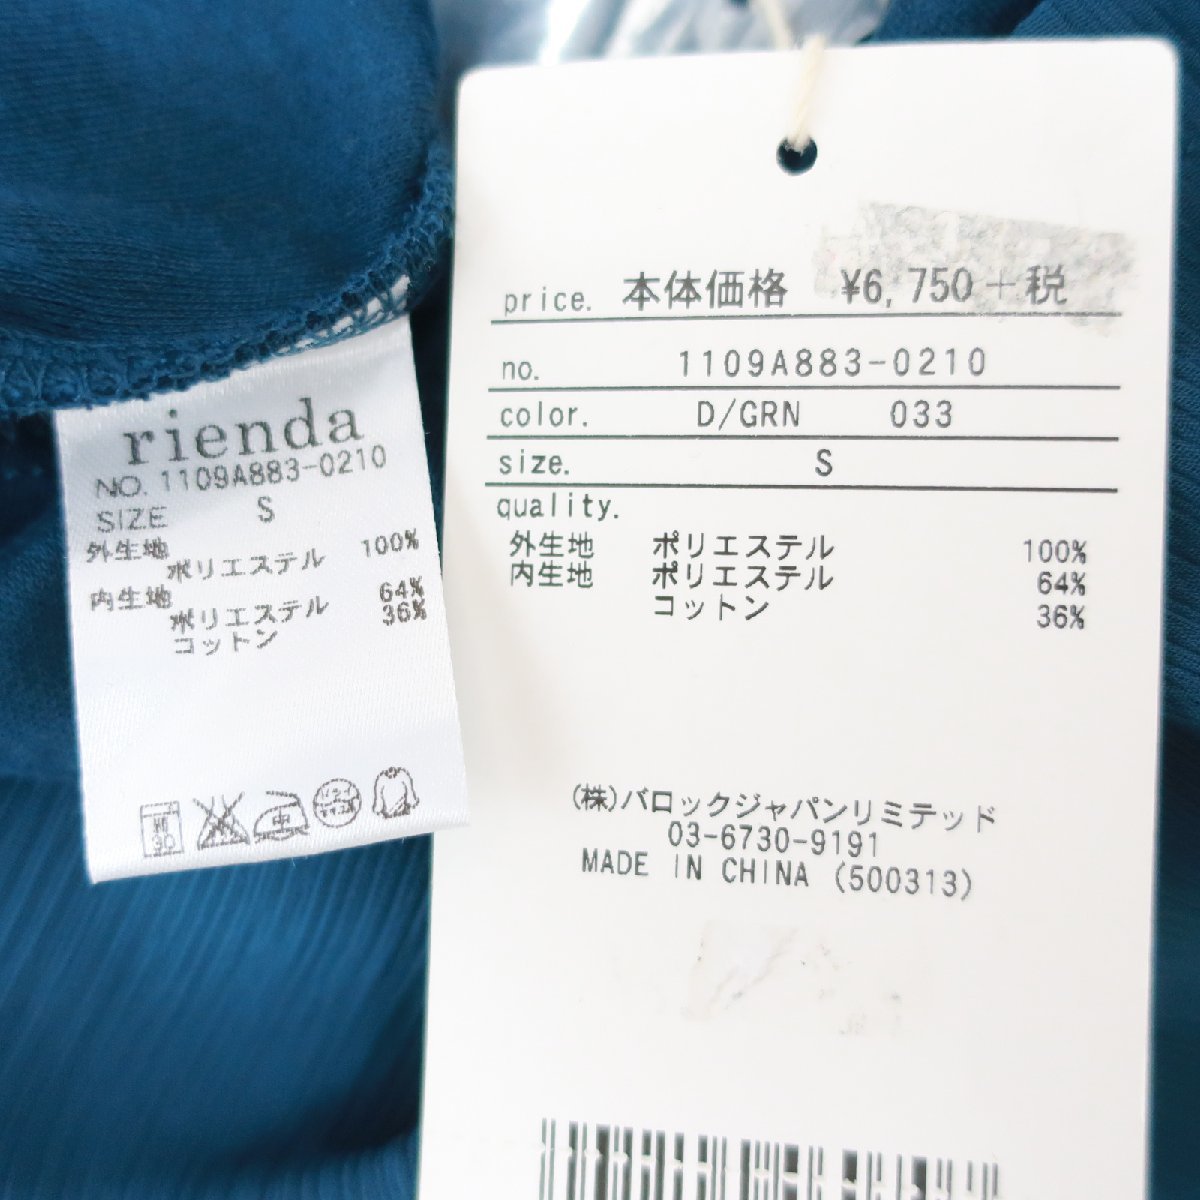 美品 rienda リエンダ シフォン レイヤード タンクトップ オールインワン パンツ S ブルー 青 レディース KA1801-169_画像6